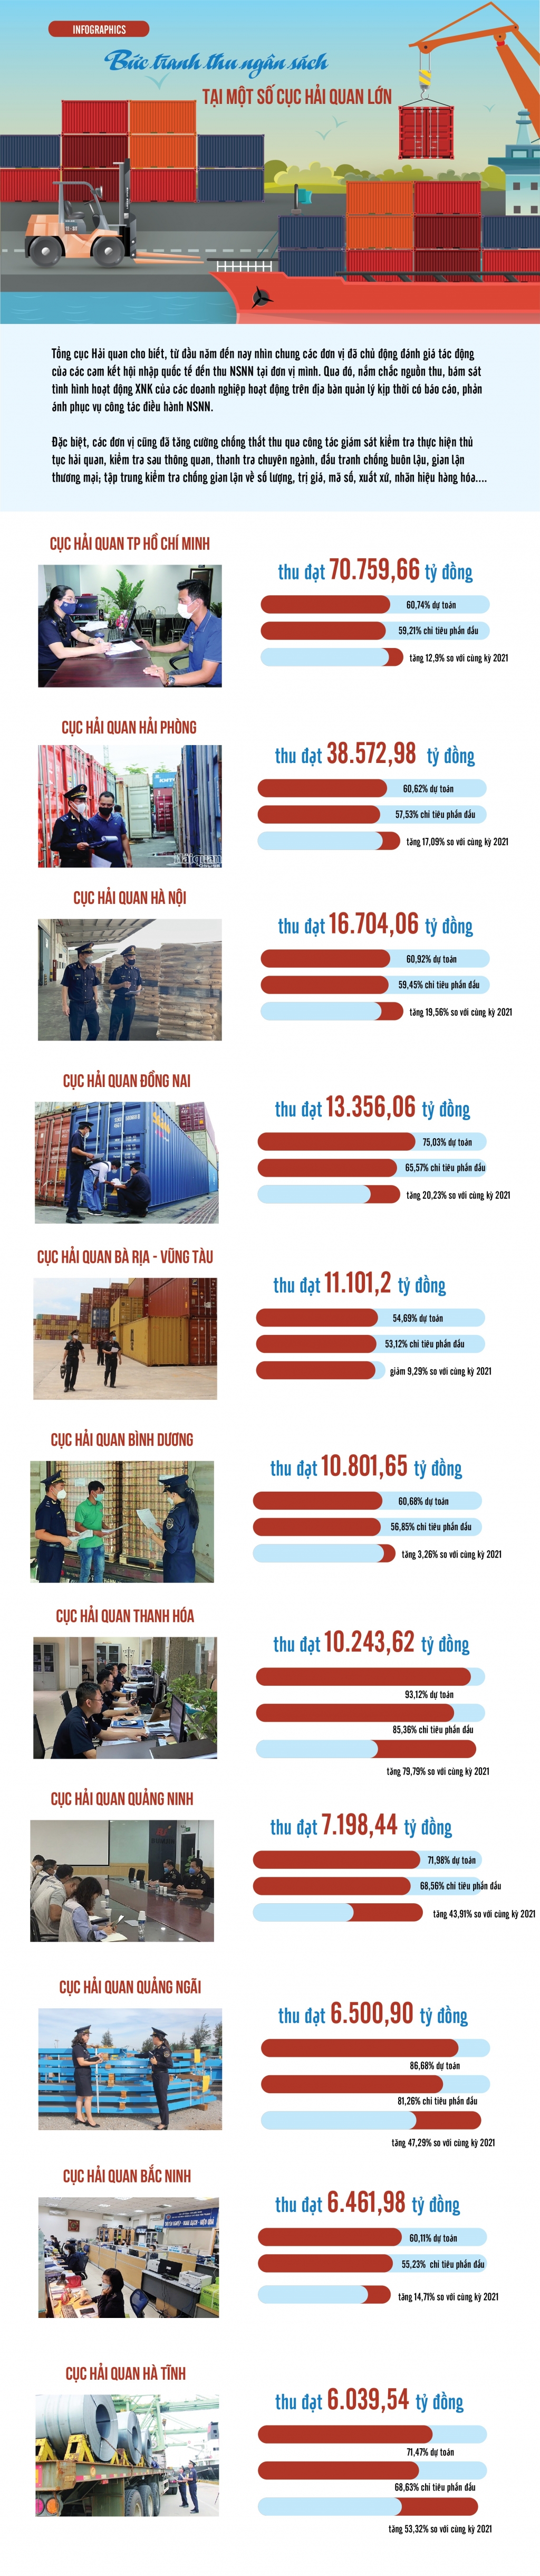 Infographics: Bức tranh thu ngân sách tại một số cục hải quan tỉnh, thành phố